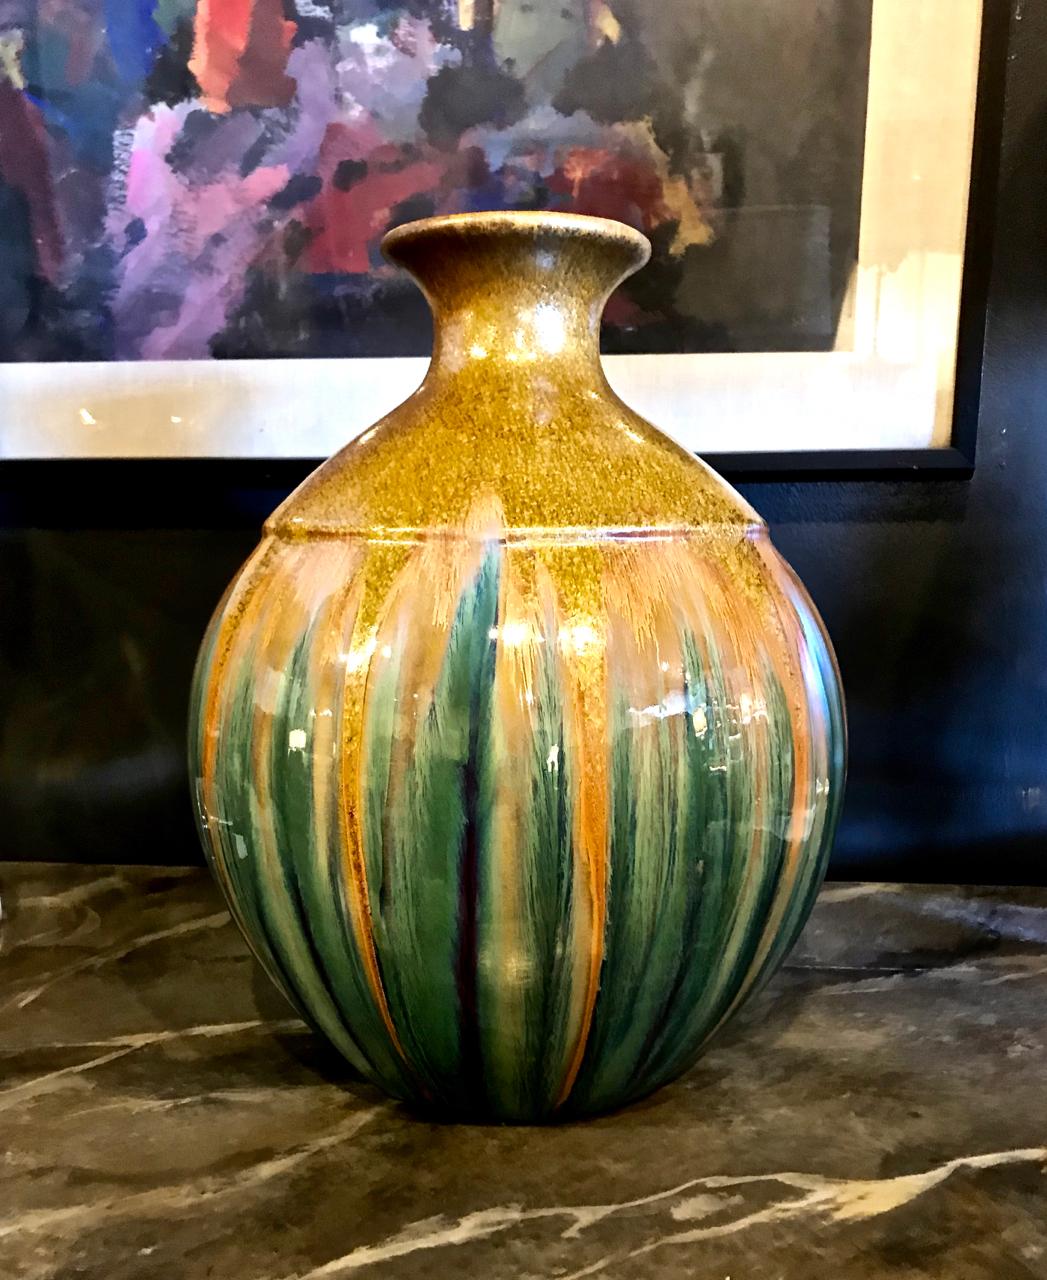 Il s'agit d'un vase unique du 20e siècle, magnifiquement irisé et émaillé. Le vase a été poté à la main dans une forme traditionnelle ; la surface finement émaillée comprend des paillettes d'or 24 carats sur le tiers supérieur du vase. Il y a une